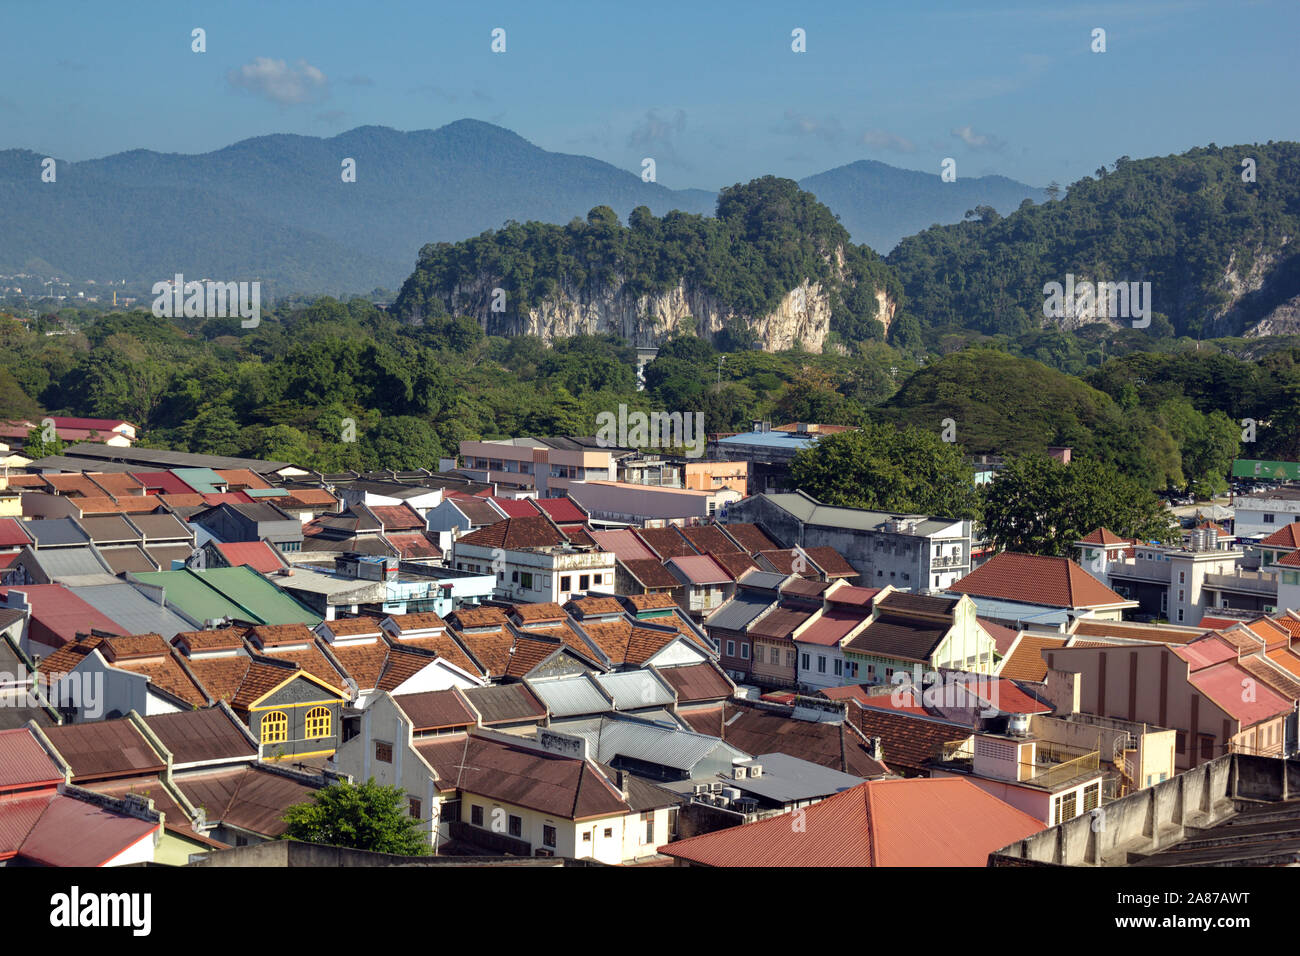 Ipoh, Perak, Malaisie, de faible hauteur est une ville entourée de montagnes. Banque D'Images